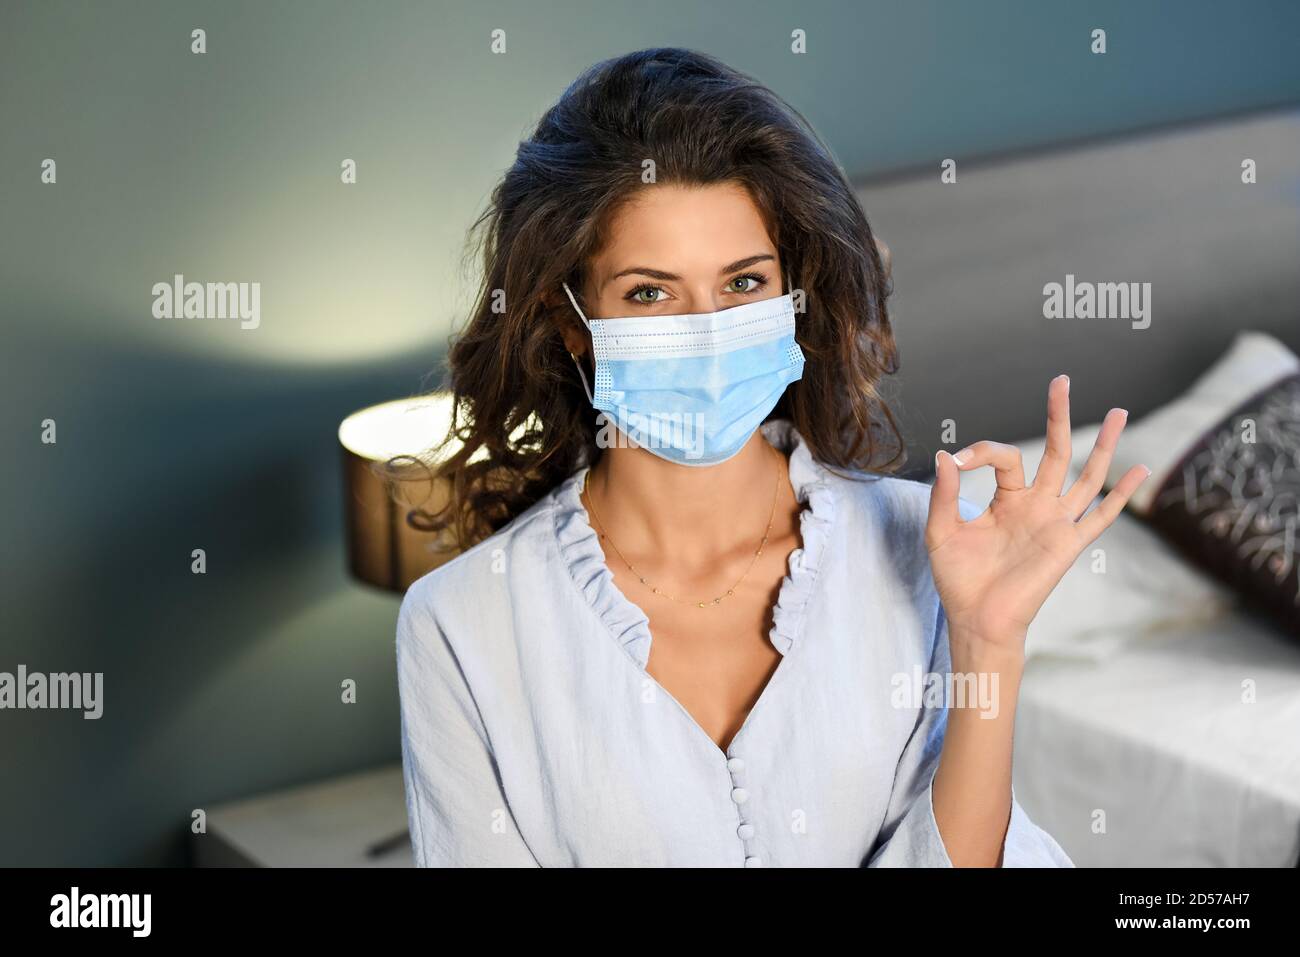 Junge Frau mit einer chirurgischen Gesichtsmaske während der Covid-19 Oder eine Coronavirus-Pandemie, die mit ihrer Hand eine OK-Geste macht In einem Konzept der Neuen Normalität Stockfoto